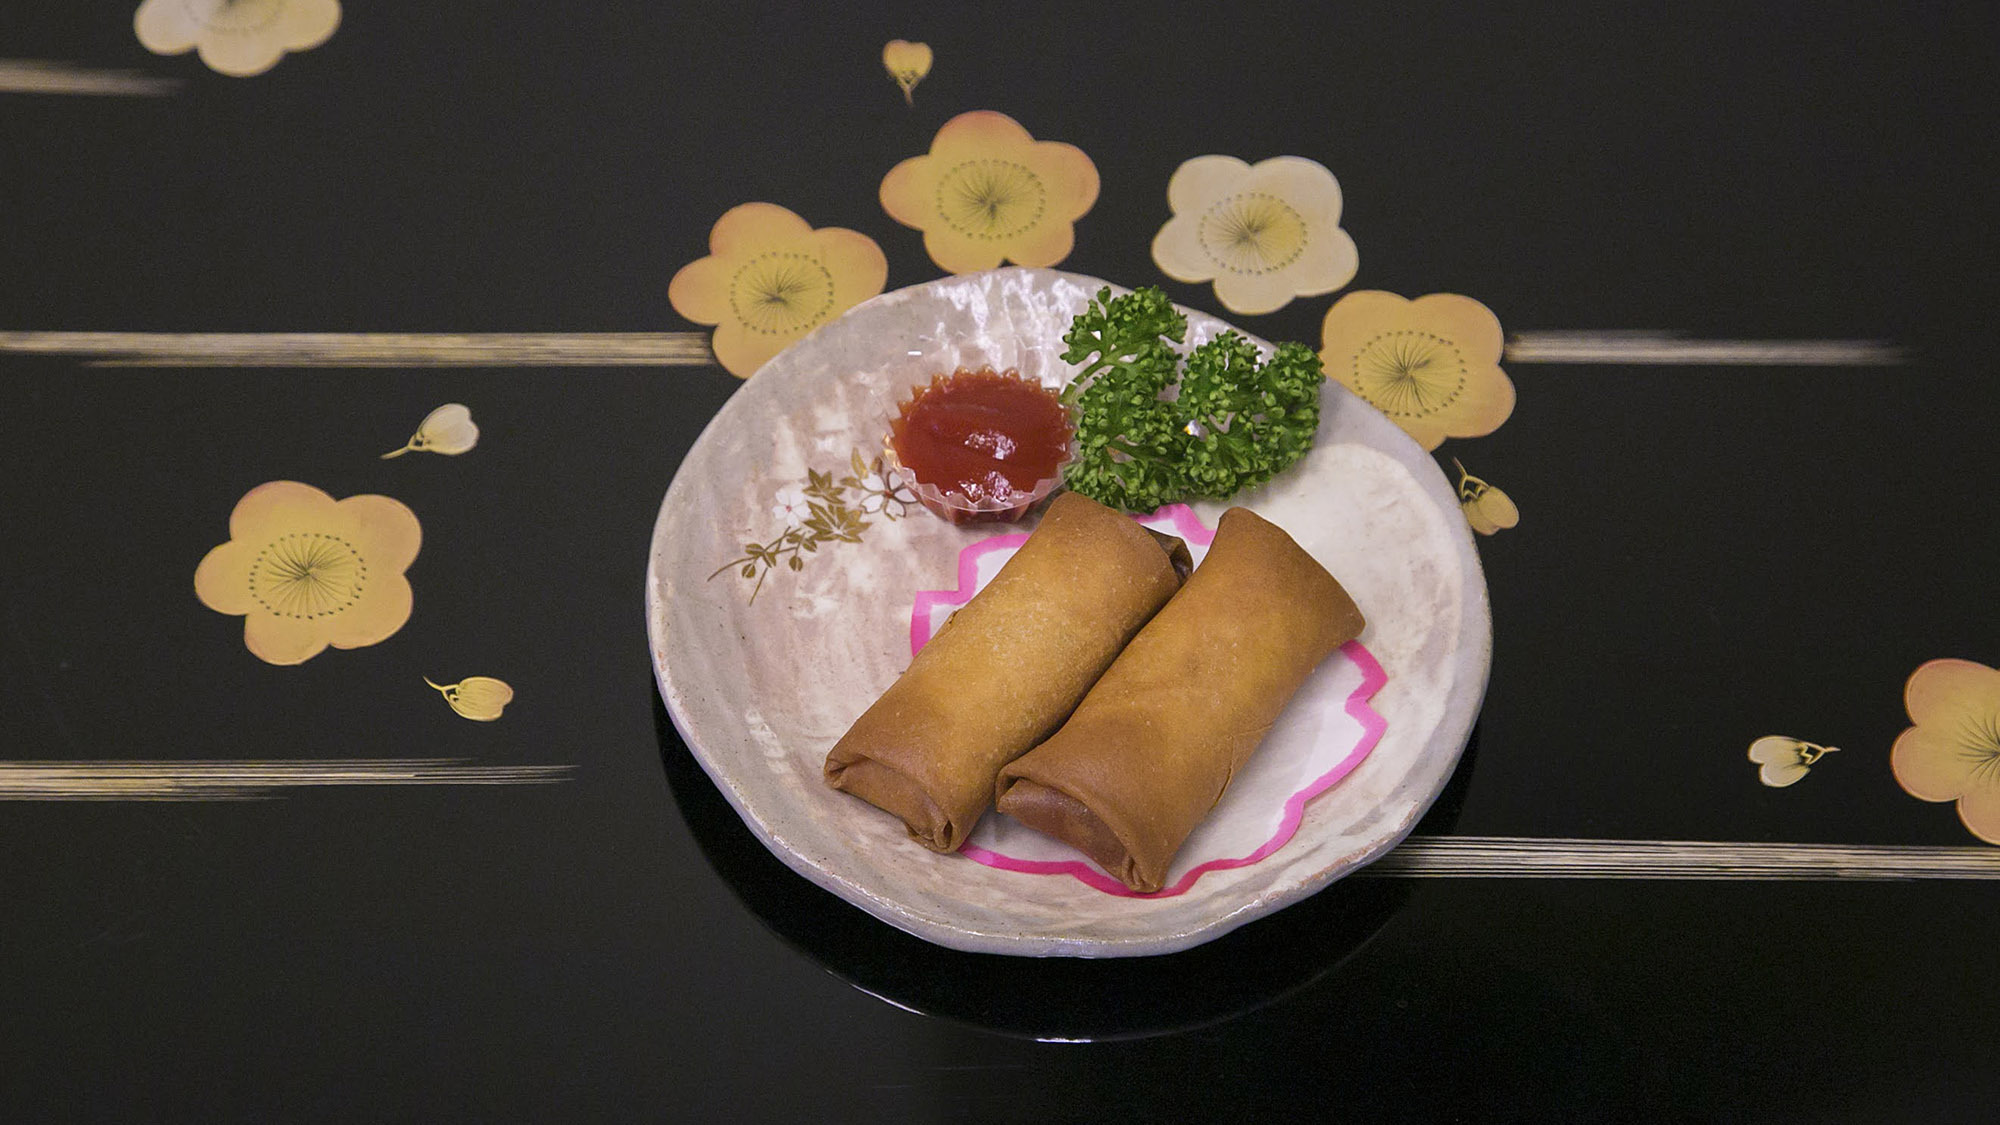 ・【夕食一例】日本有数の農業出荷額を誇る地元の新鮮食材を使用したメニューをご提供